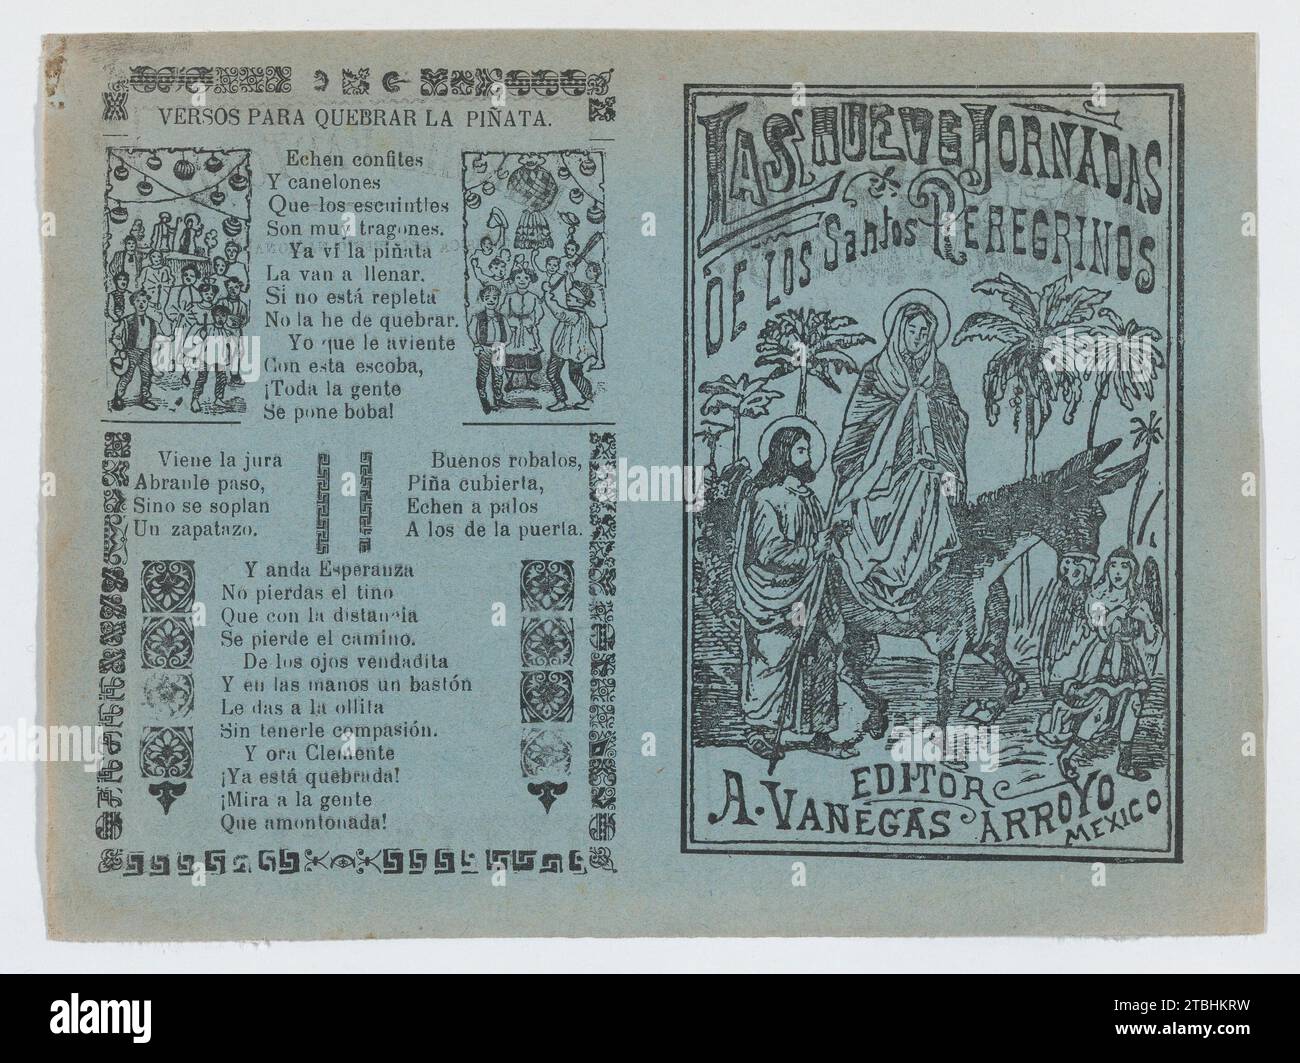 Deux annonces imprimées sur la même feuille pour des documents publiés par Vanegas Arroyo, celle à gauche a des versets pour accompagner la rupture d'une pinata et à droite, concernant des pèlerins religieux avec une image de la Sainte famille lors de la fuite en Egypte 1946 de Jose Guadalupe Posada Banque D'Images